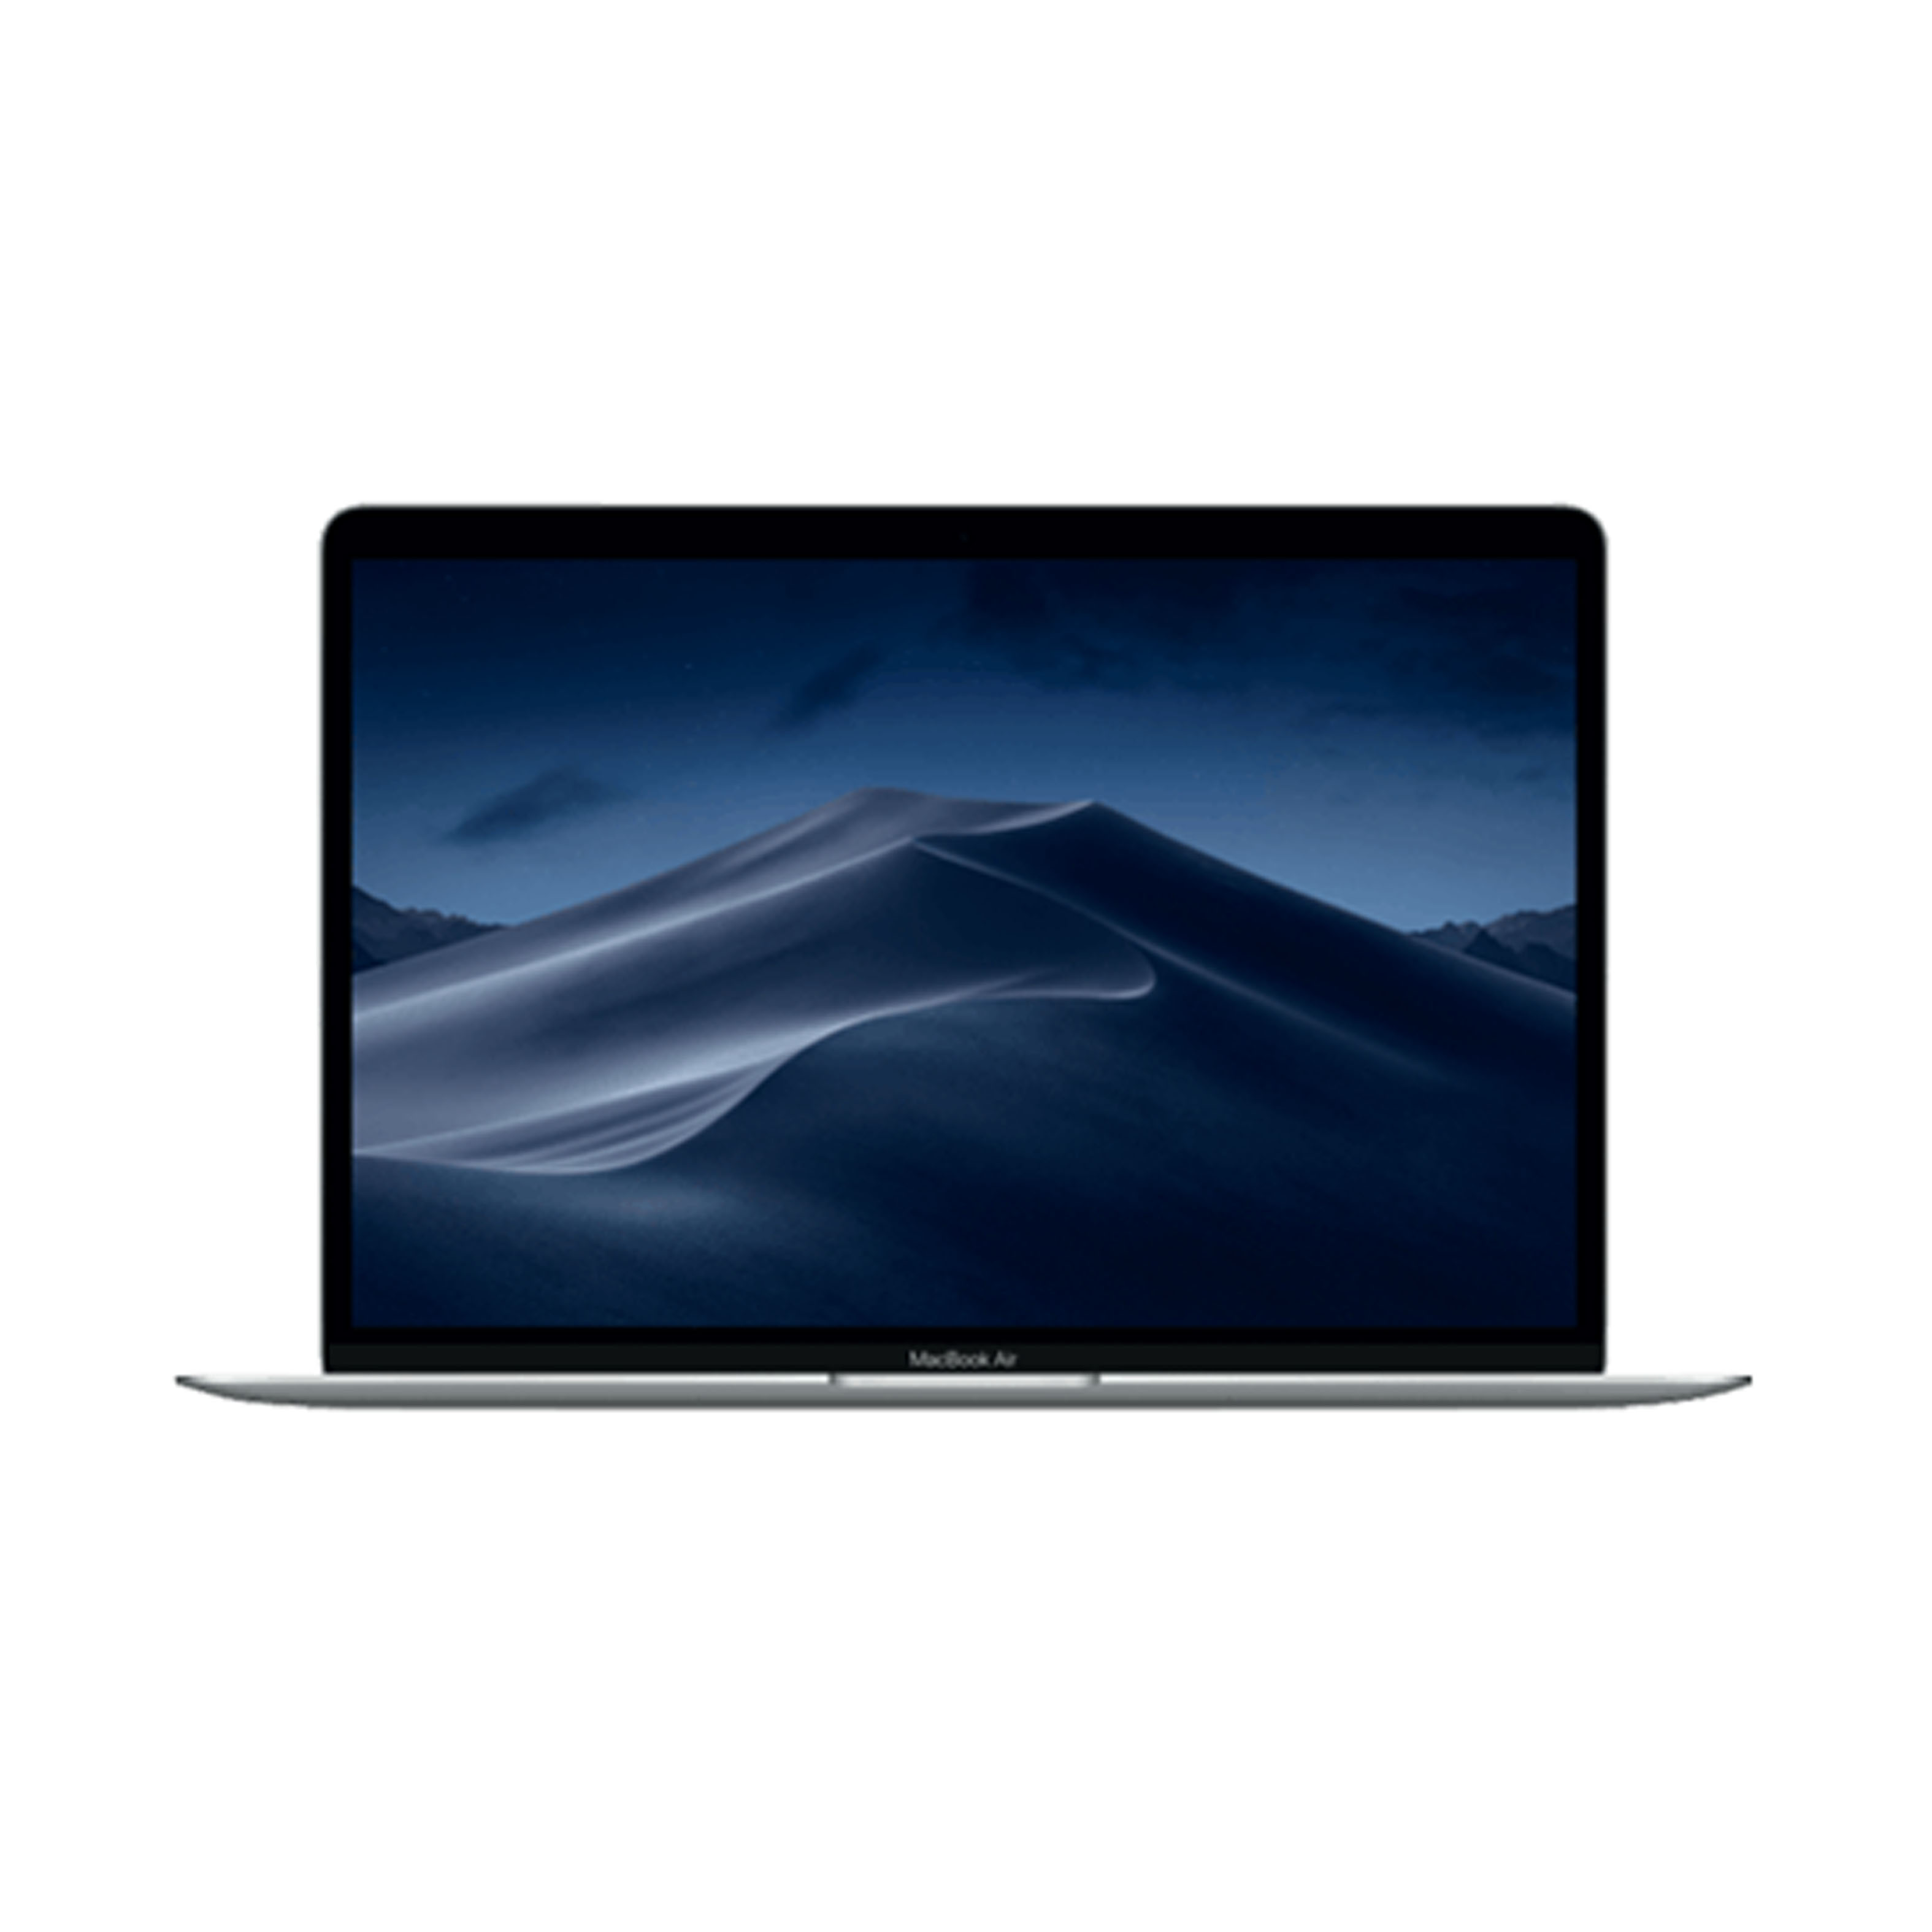 Apple 13 inch MacBook Air 1.6GHz Dual Core Intel Core i5, 128GB Silver (MREA2X/A)